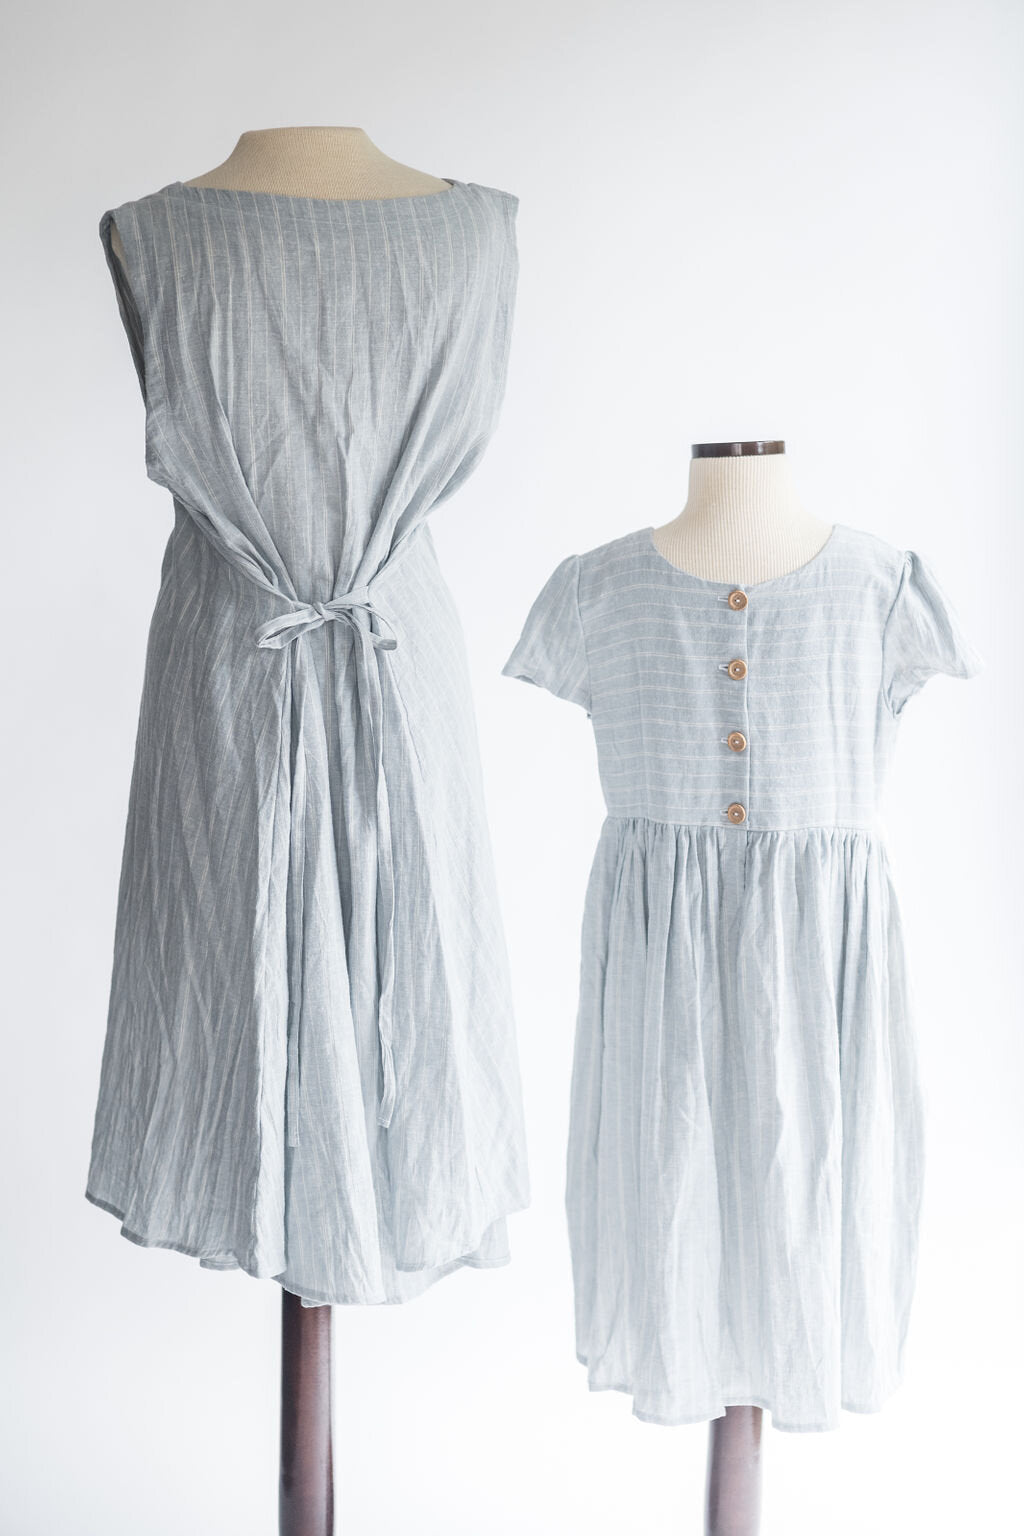 The Backside of the Children's Linen Dress